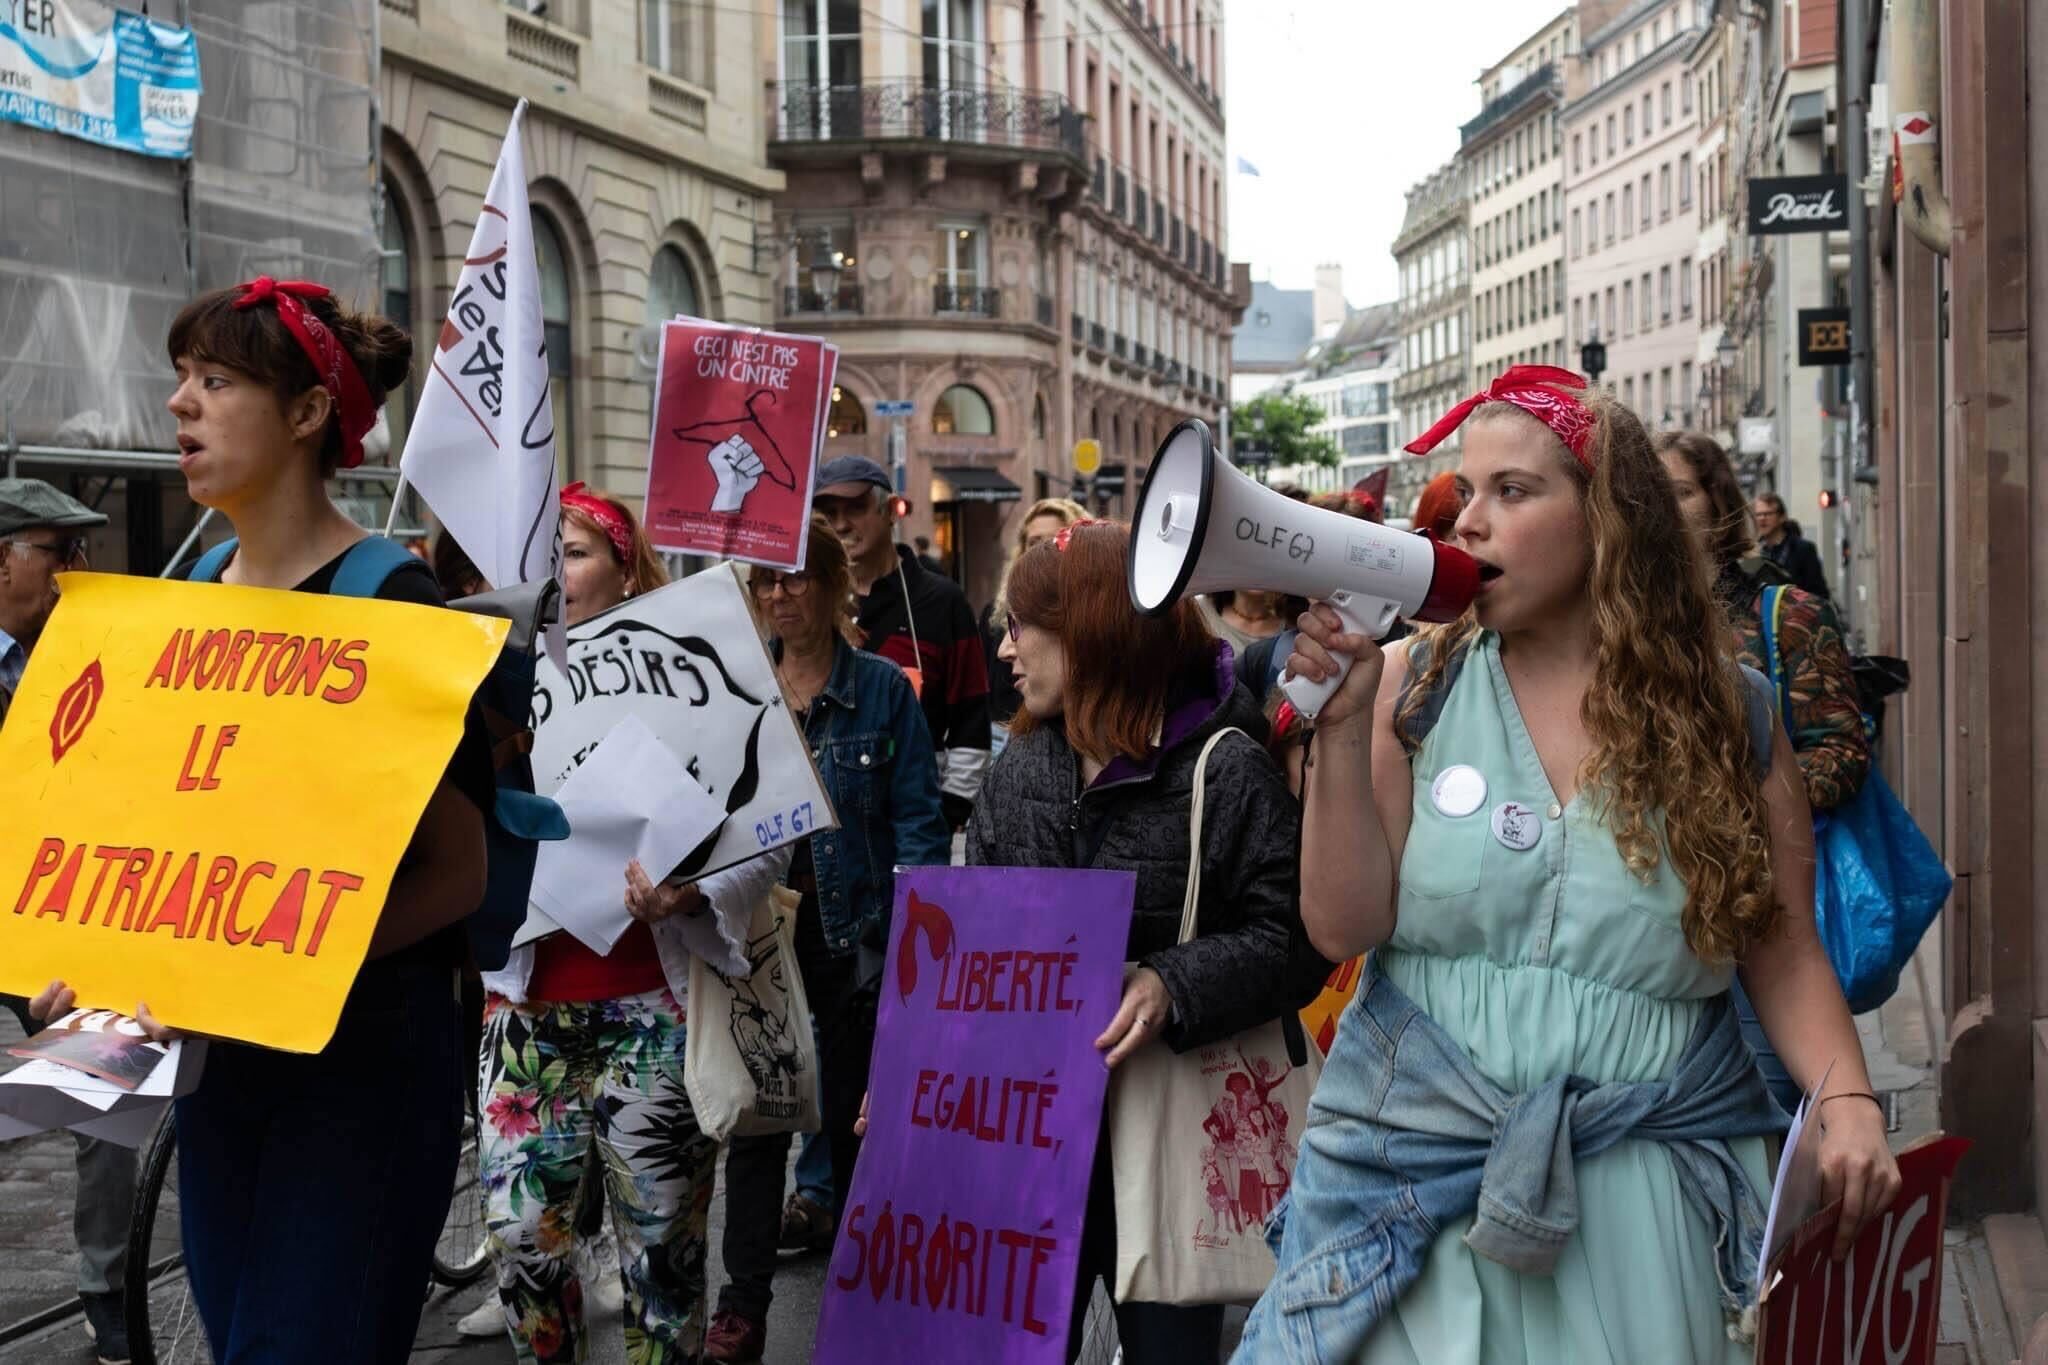 Manifestation samedi à Strasbourg contre l’annulation du droit à l’avortement aux États-Unis